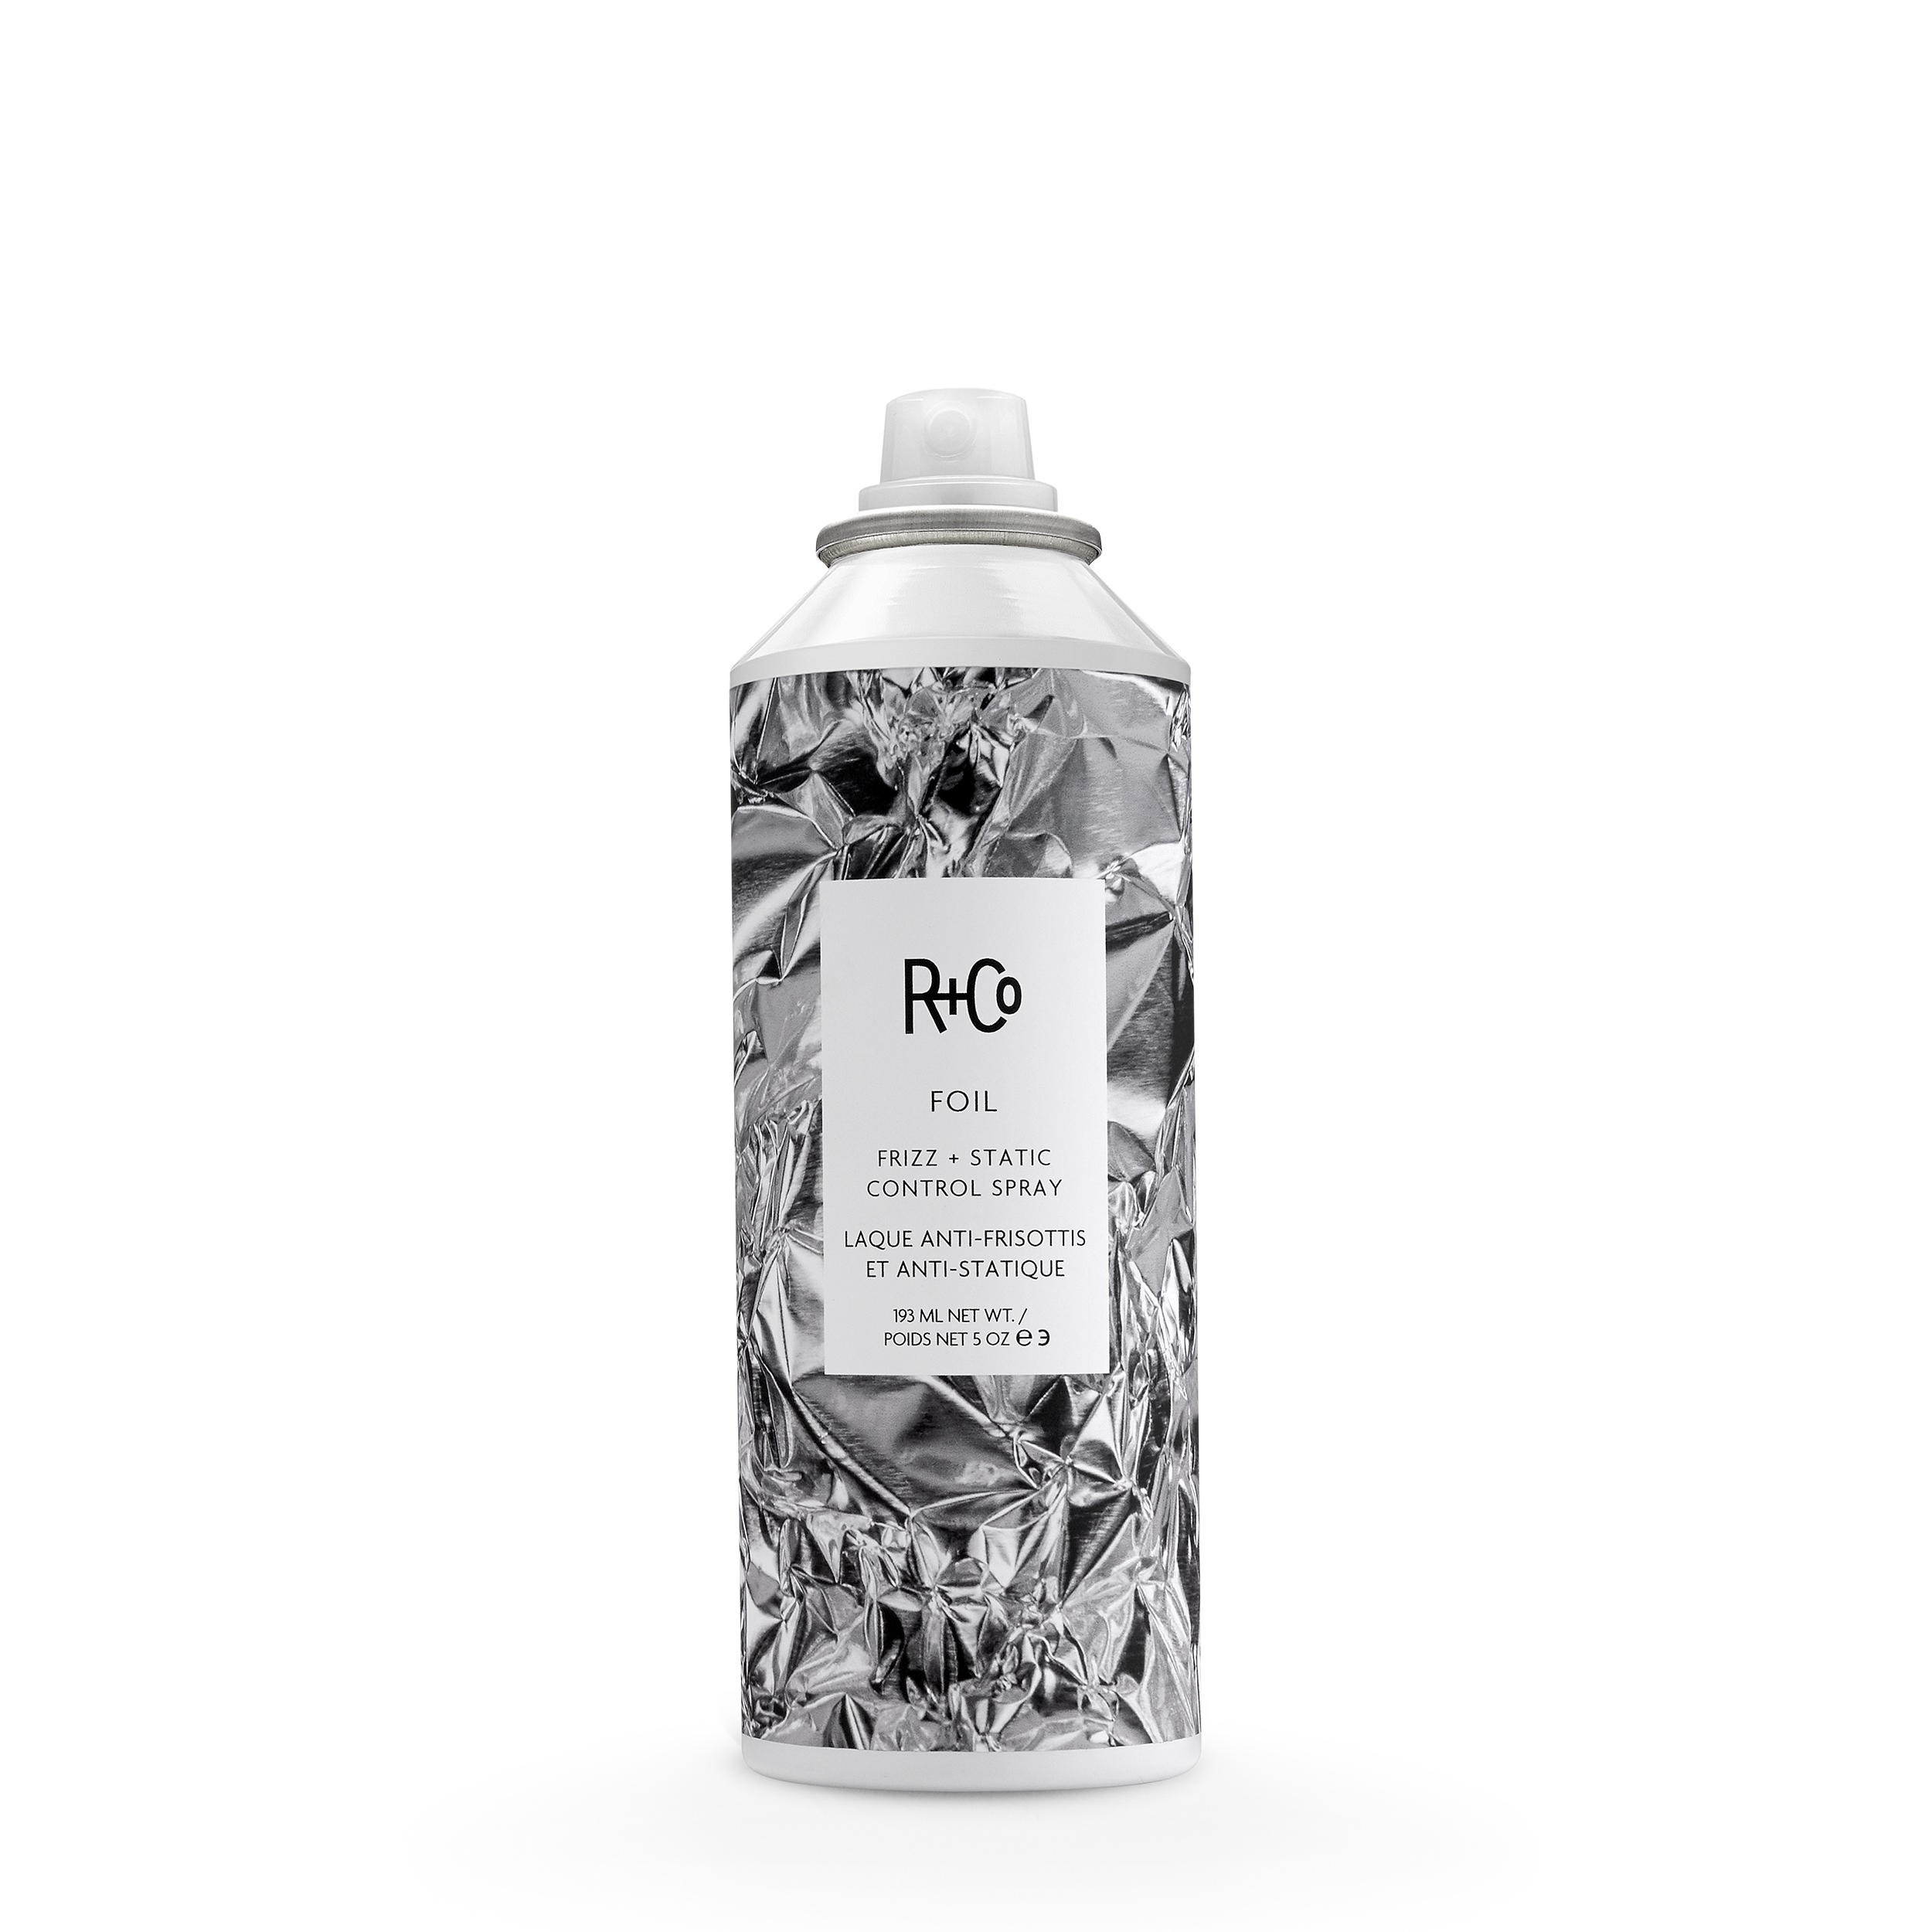 R+CO Cпрей-антистатик для волос «Foil»